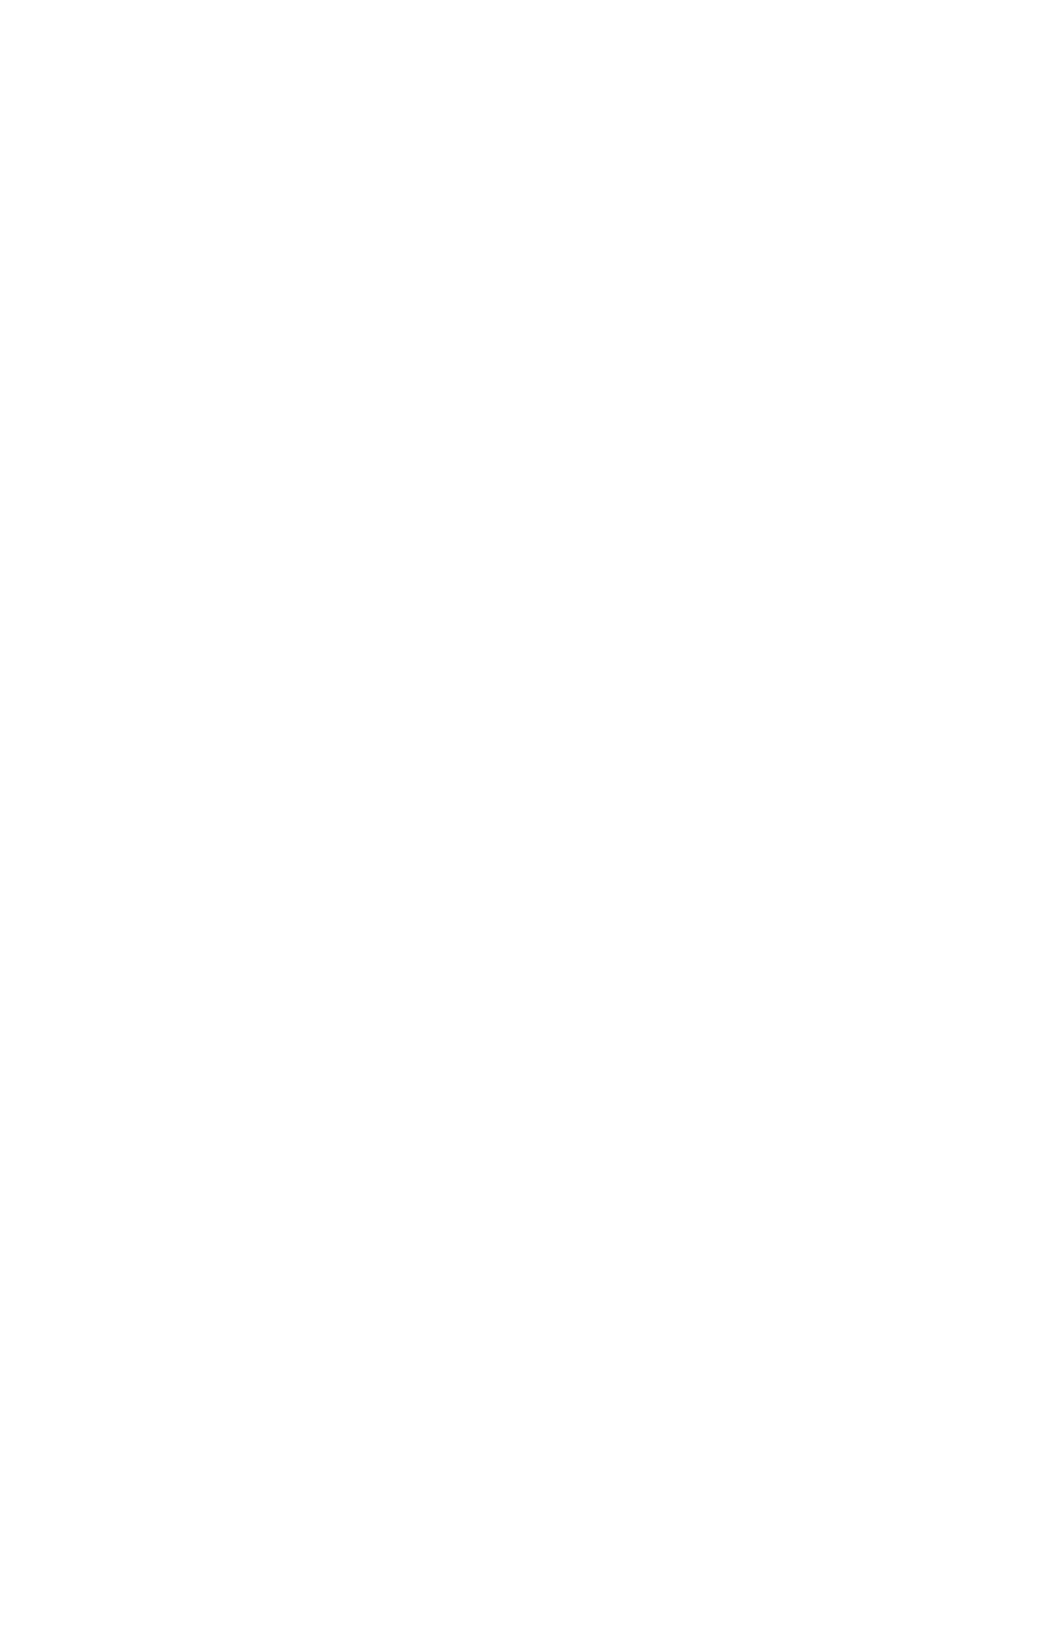 HAVAN Awards Logo